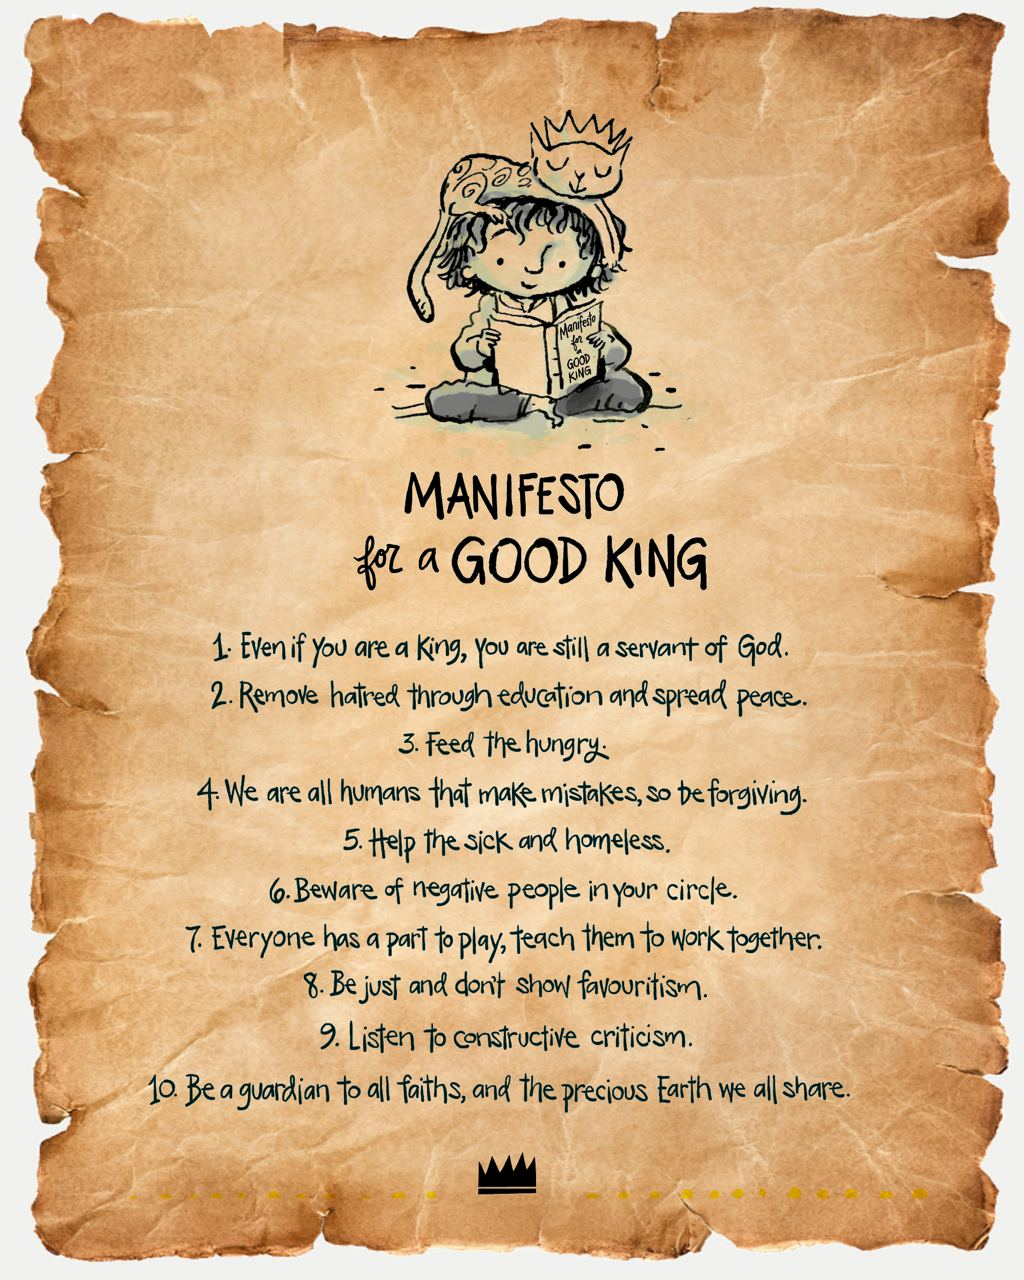 cat stevens manifesto for a king yusuf islam